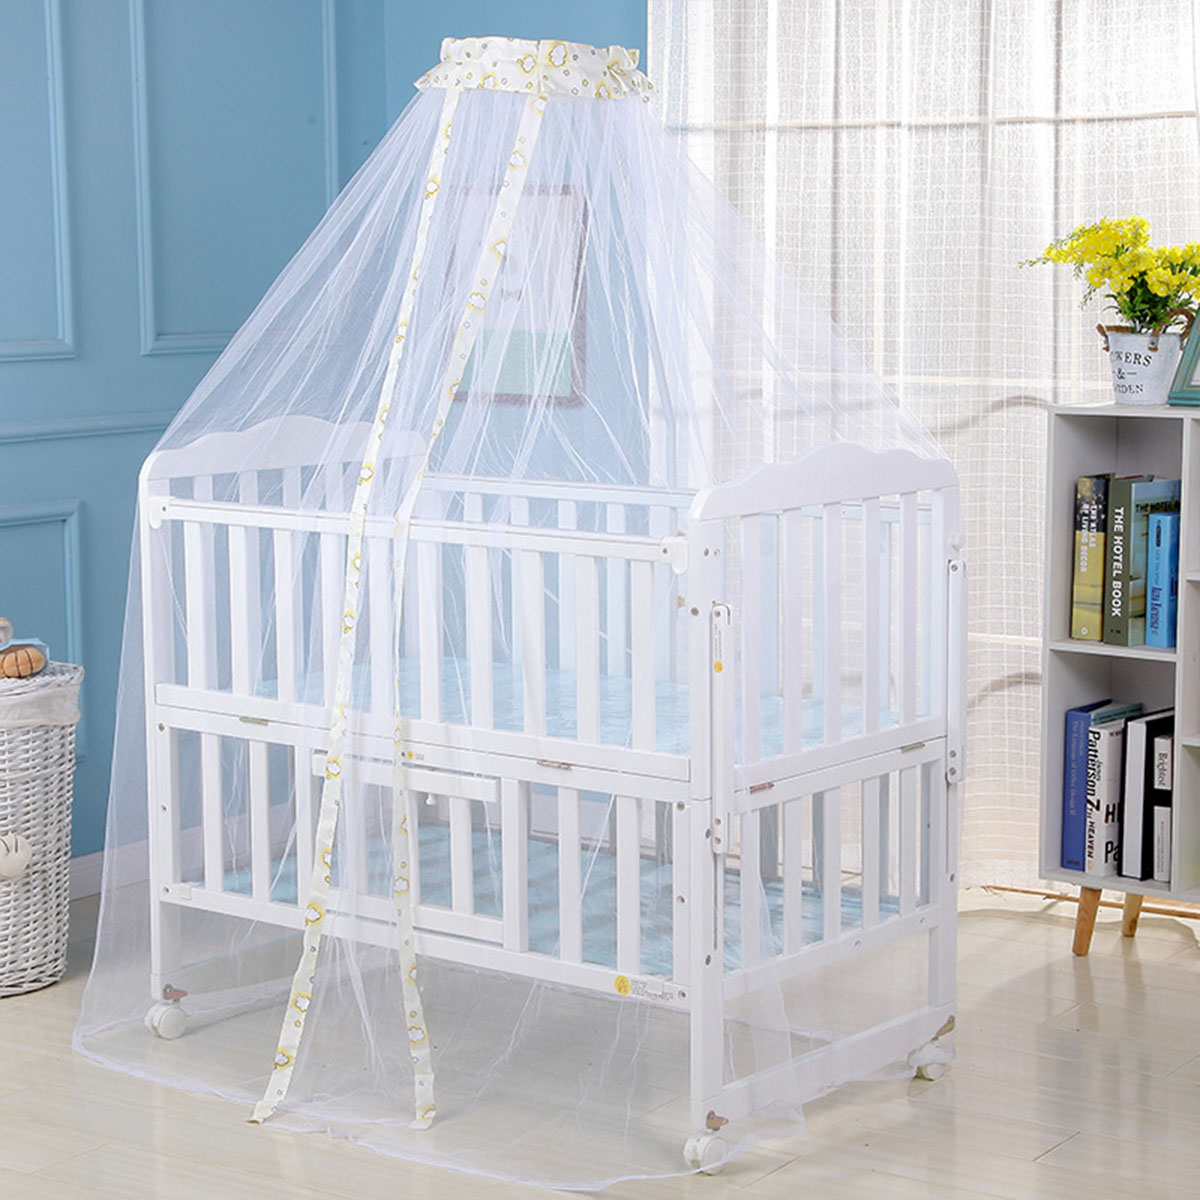 Myggenet baby seng myggenet mesh kuppel gardinet til småbørneseng barneseng baldakin blå hvid farve dropshipp: Hvid